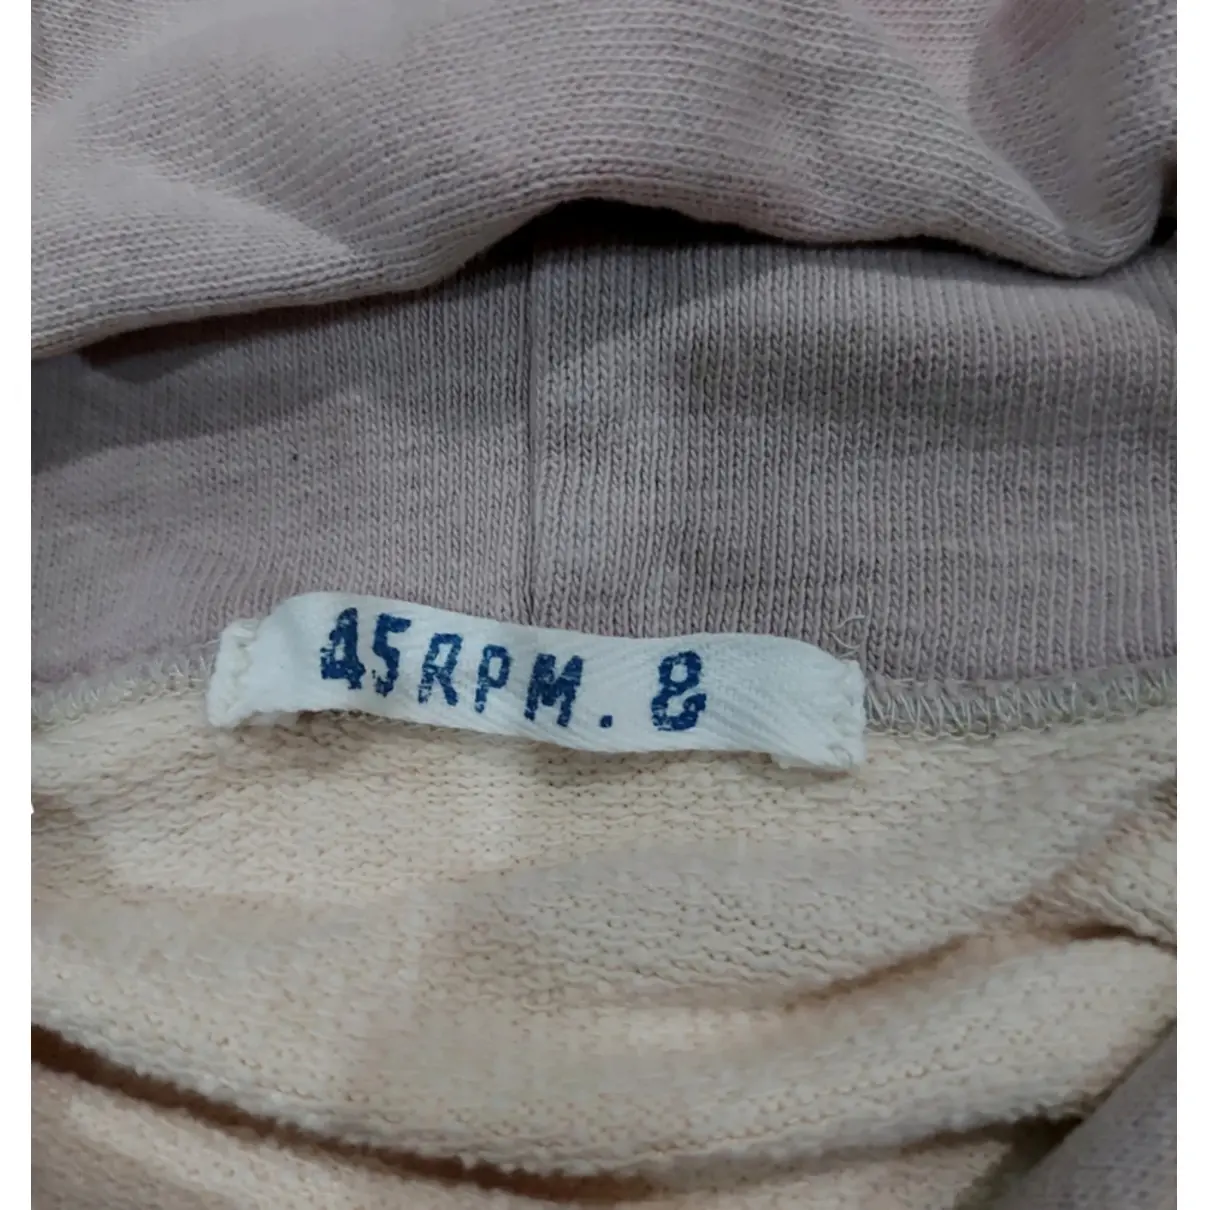 Buy 45RPM Sweatshirt online